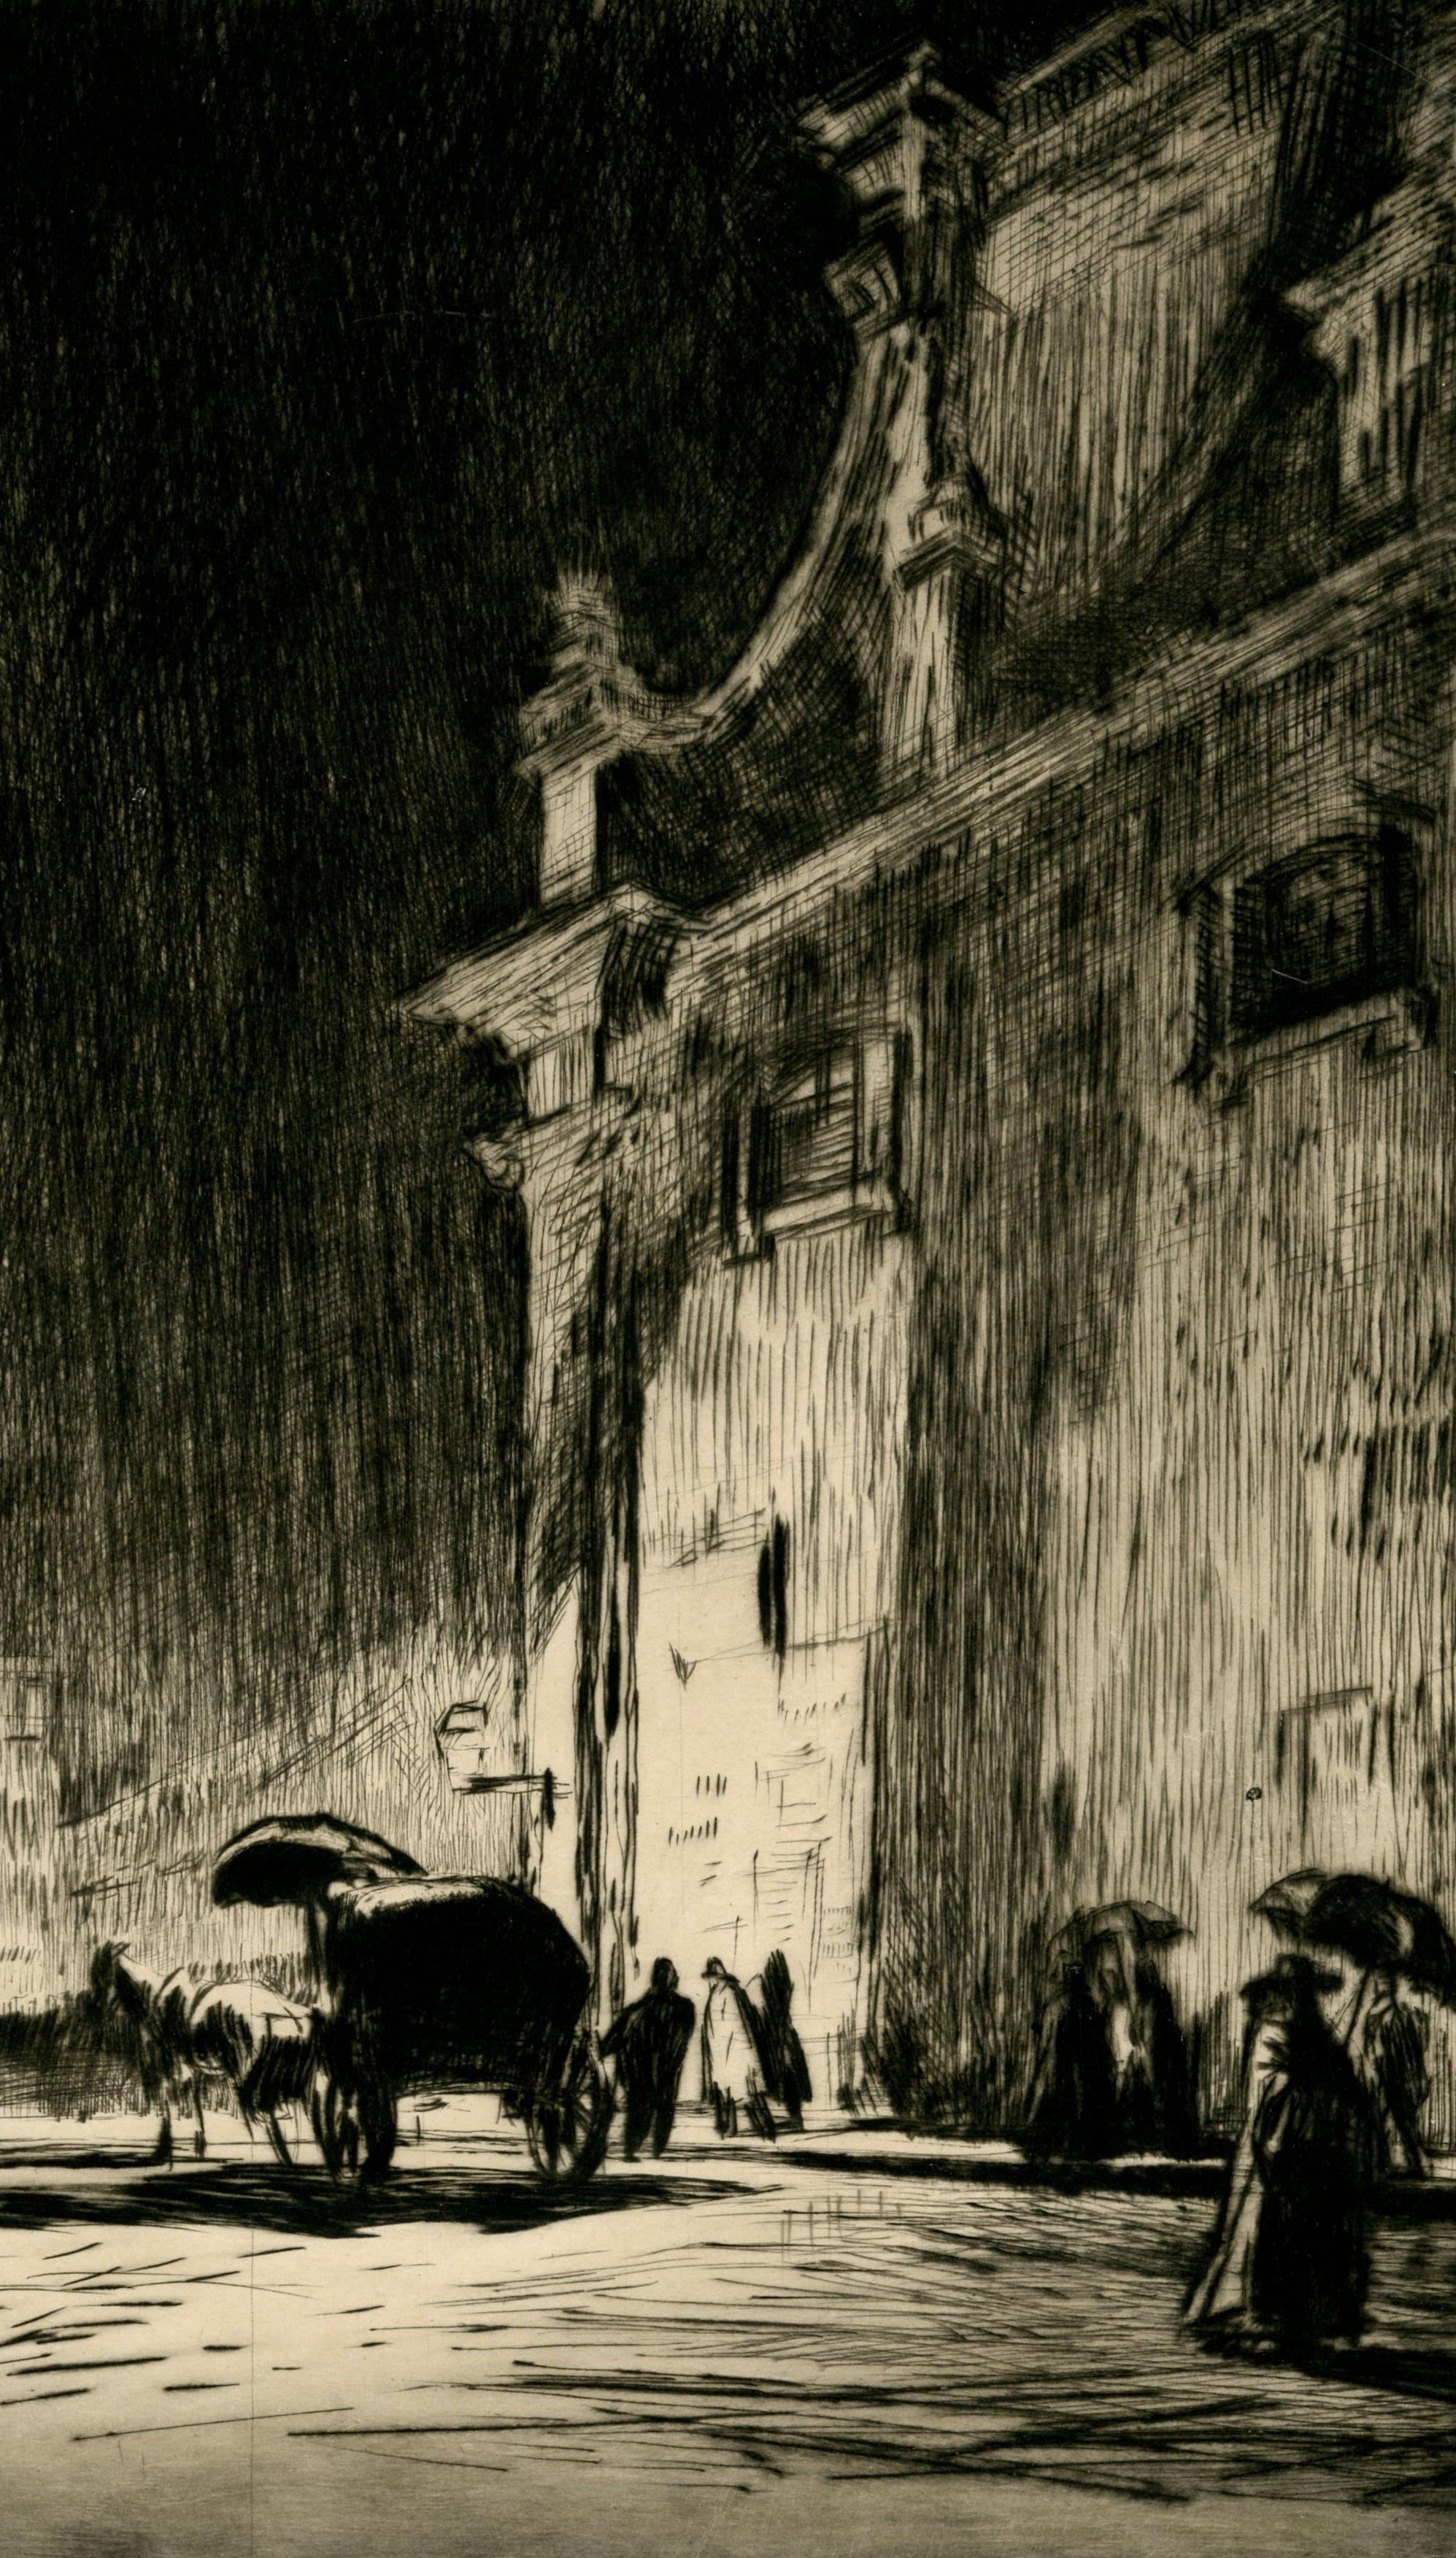 Nuit Pluvieuse à Rome
Pointe sèche, 1913
Signée au crayon et titrée dans la marge inférieure par l'artiste.
(voir photo)
Provenance :
Kennedy Galleries, Stock # A6538
Référence ; Doddgson 299 _/X
Édition totale dans 10 états 125 imprimés
Note : La